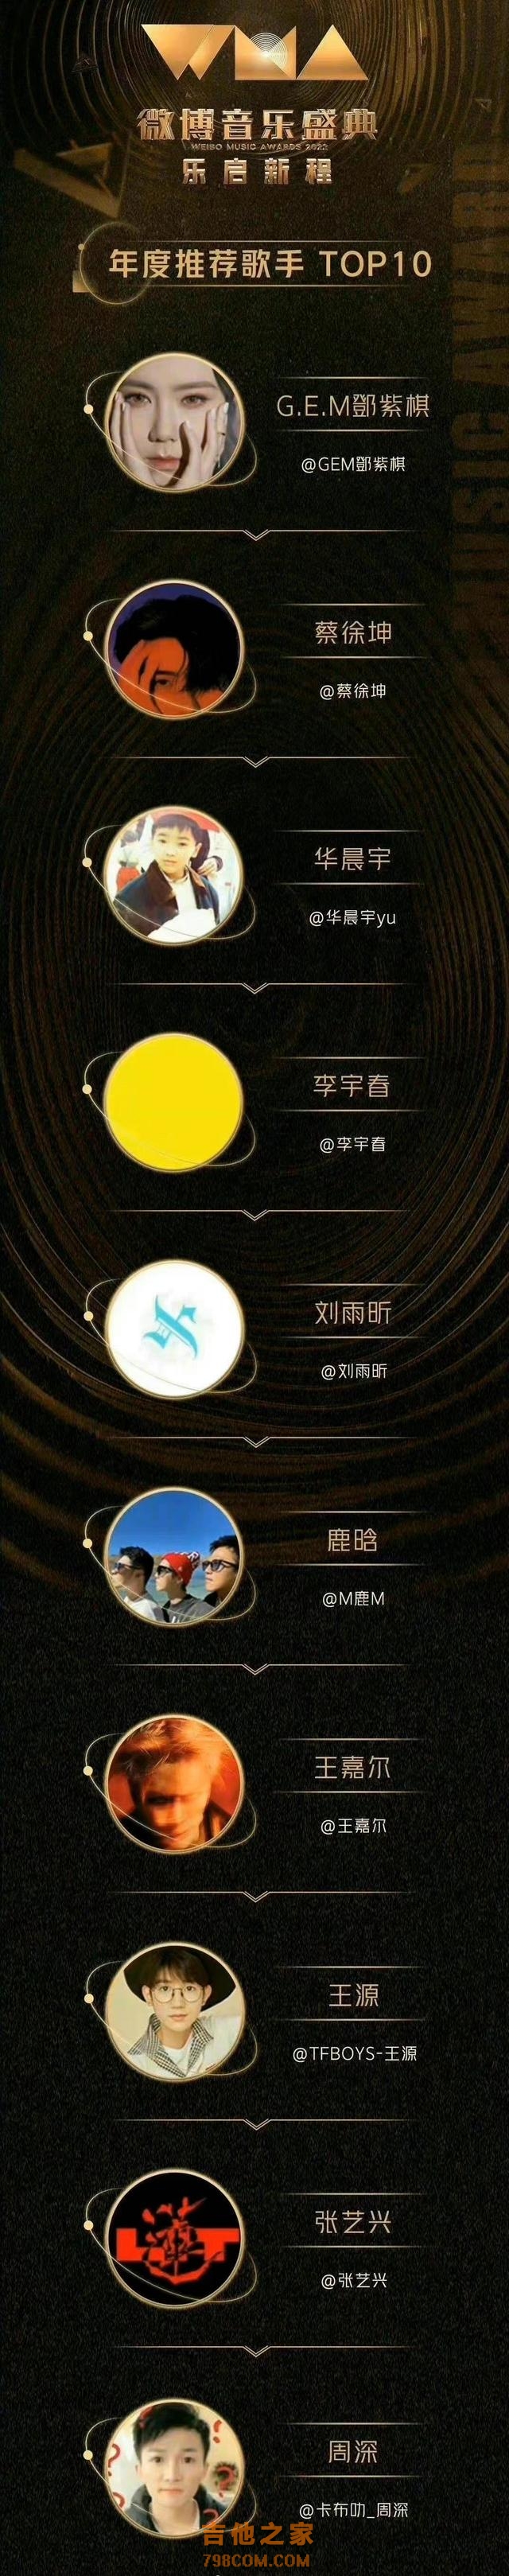 微博年度推荐十大歌手：蔡徐坤和张艺兴入选，周杰伦和陈奕迅落榜